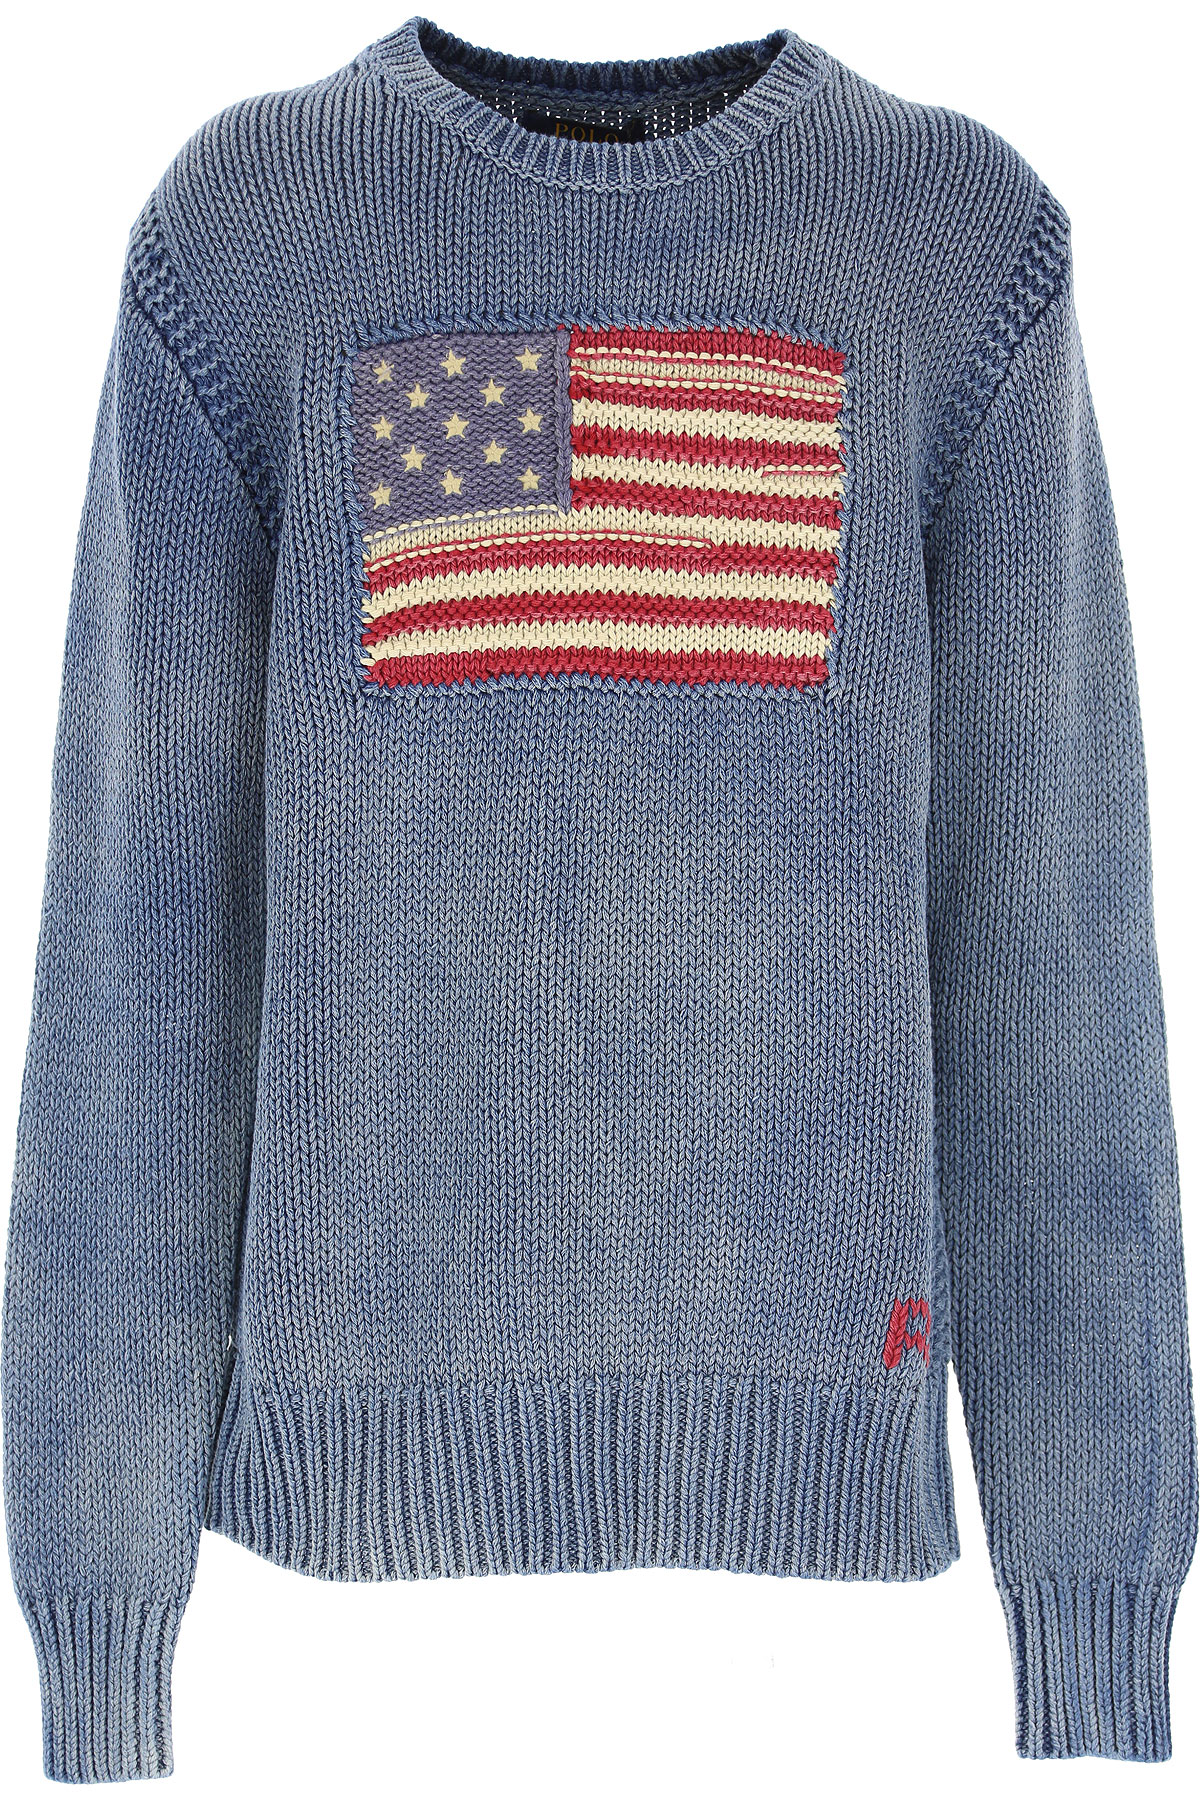 Ralph Lauren Kinder Pullover für Jungen Günstig im Outlet Sale, Blauer Himmel, Baumwolle, 2017, 7Y S